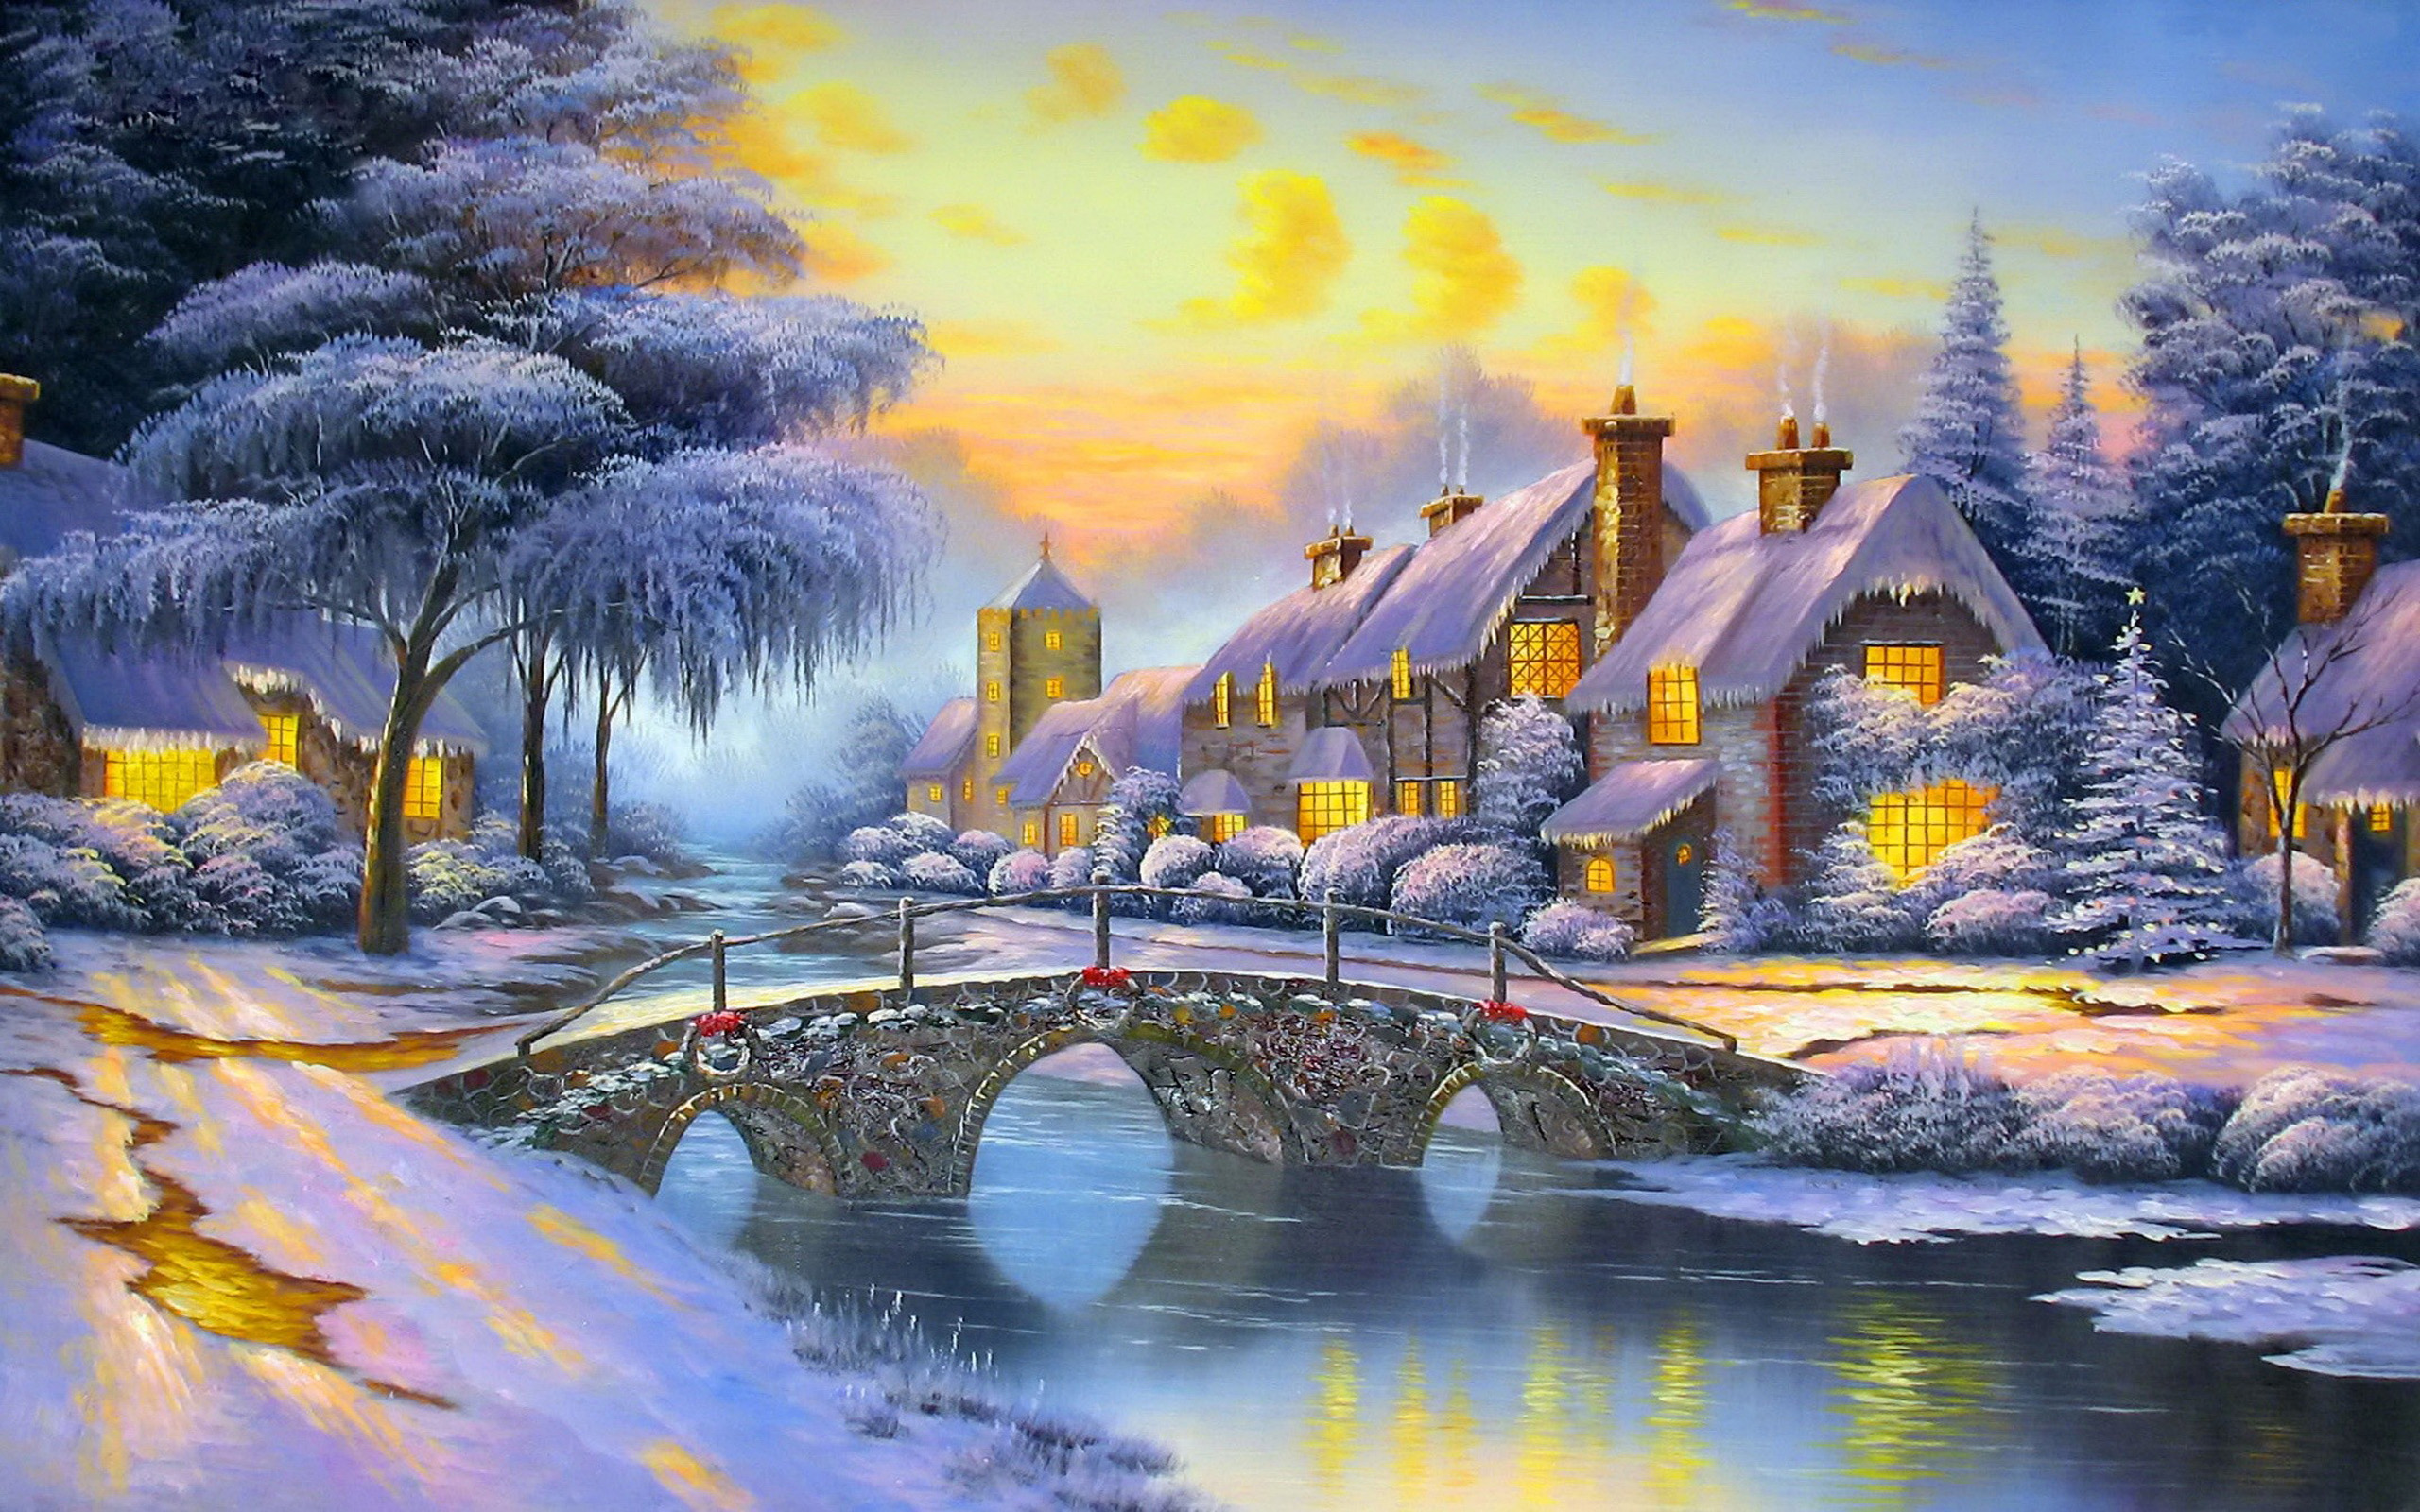 Скачать картинку Зима, Снег, Дерево, Дом, Мост, Деревня, Художественные в телефон бесплатно.